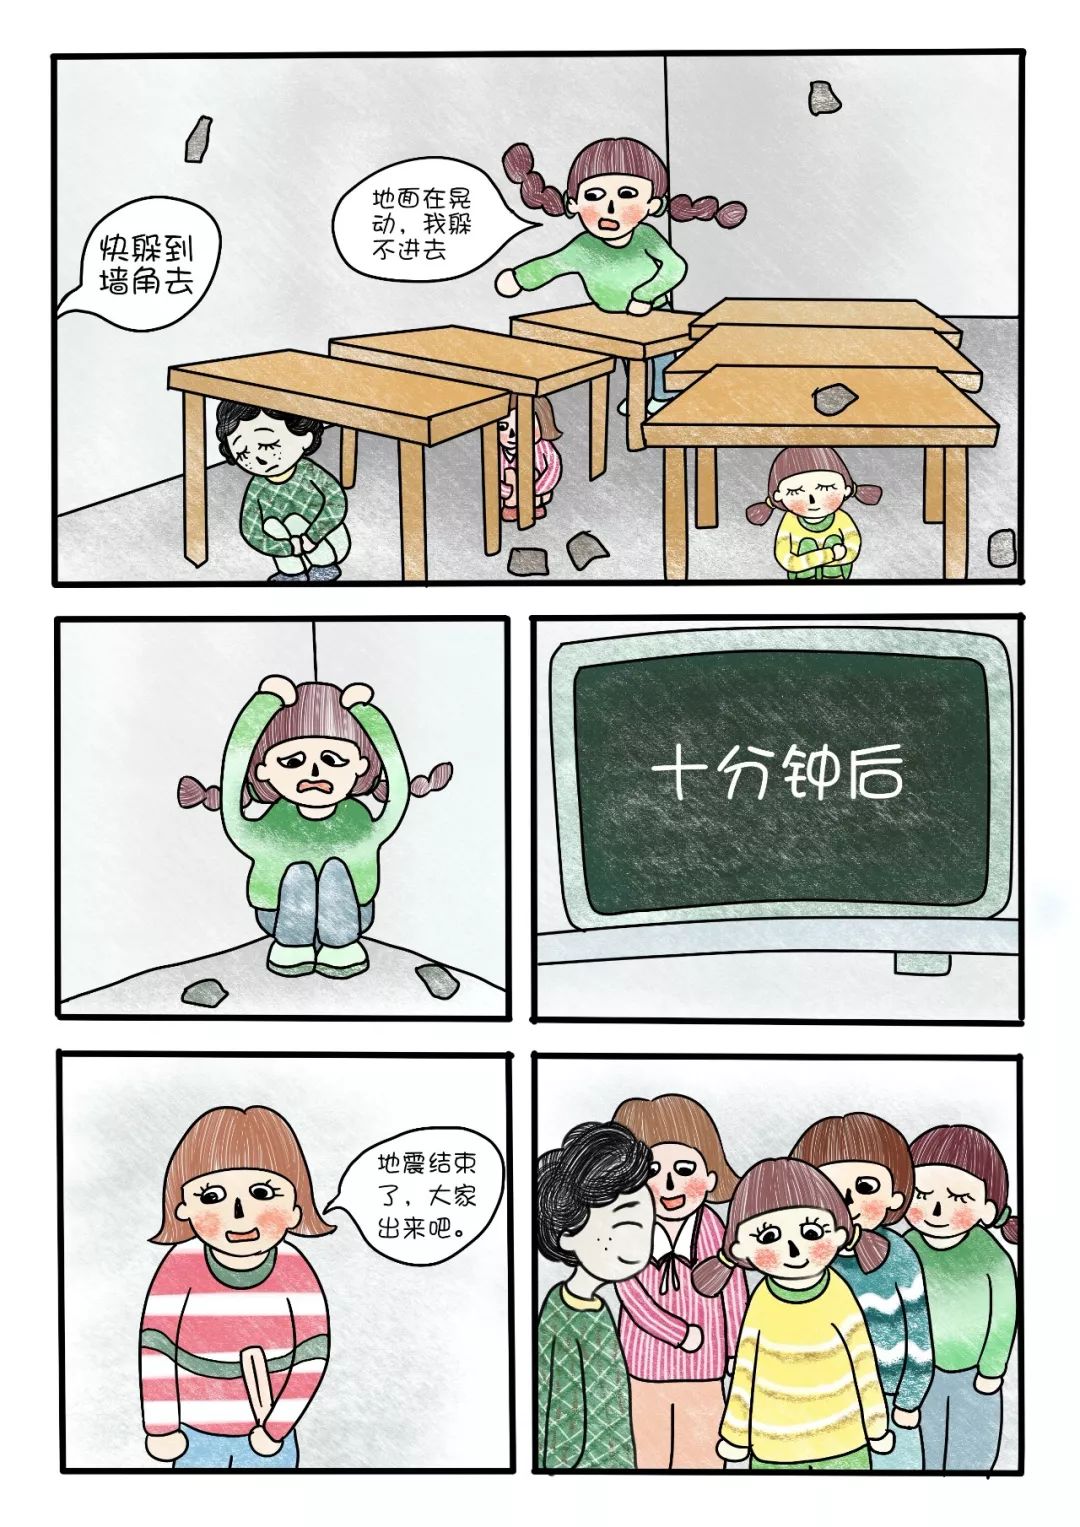 【作品展播】地震求生小漫画